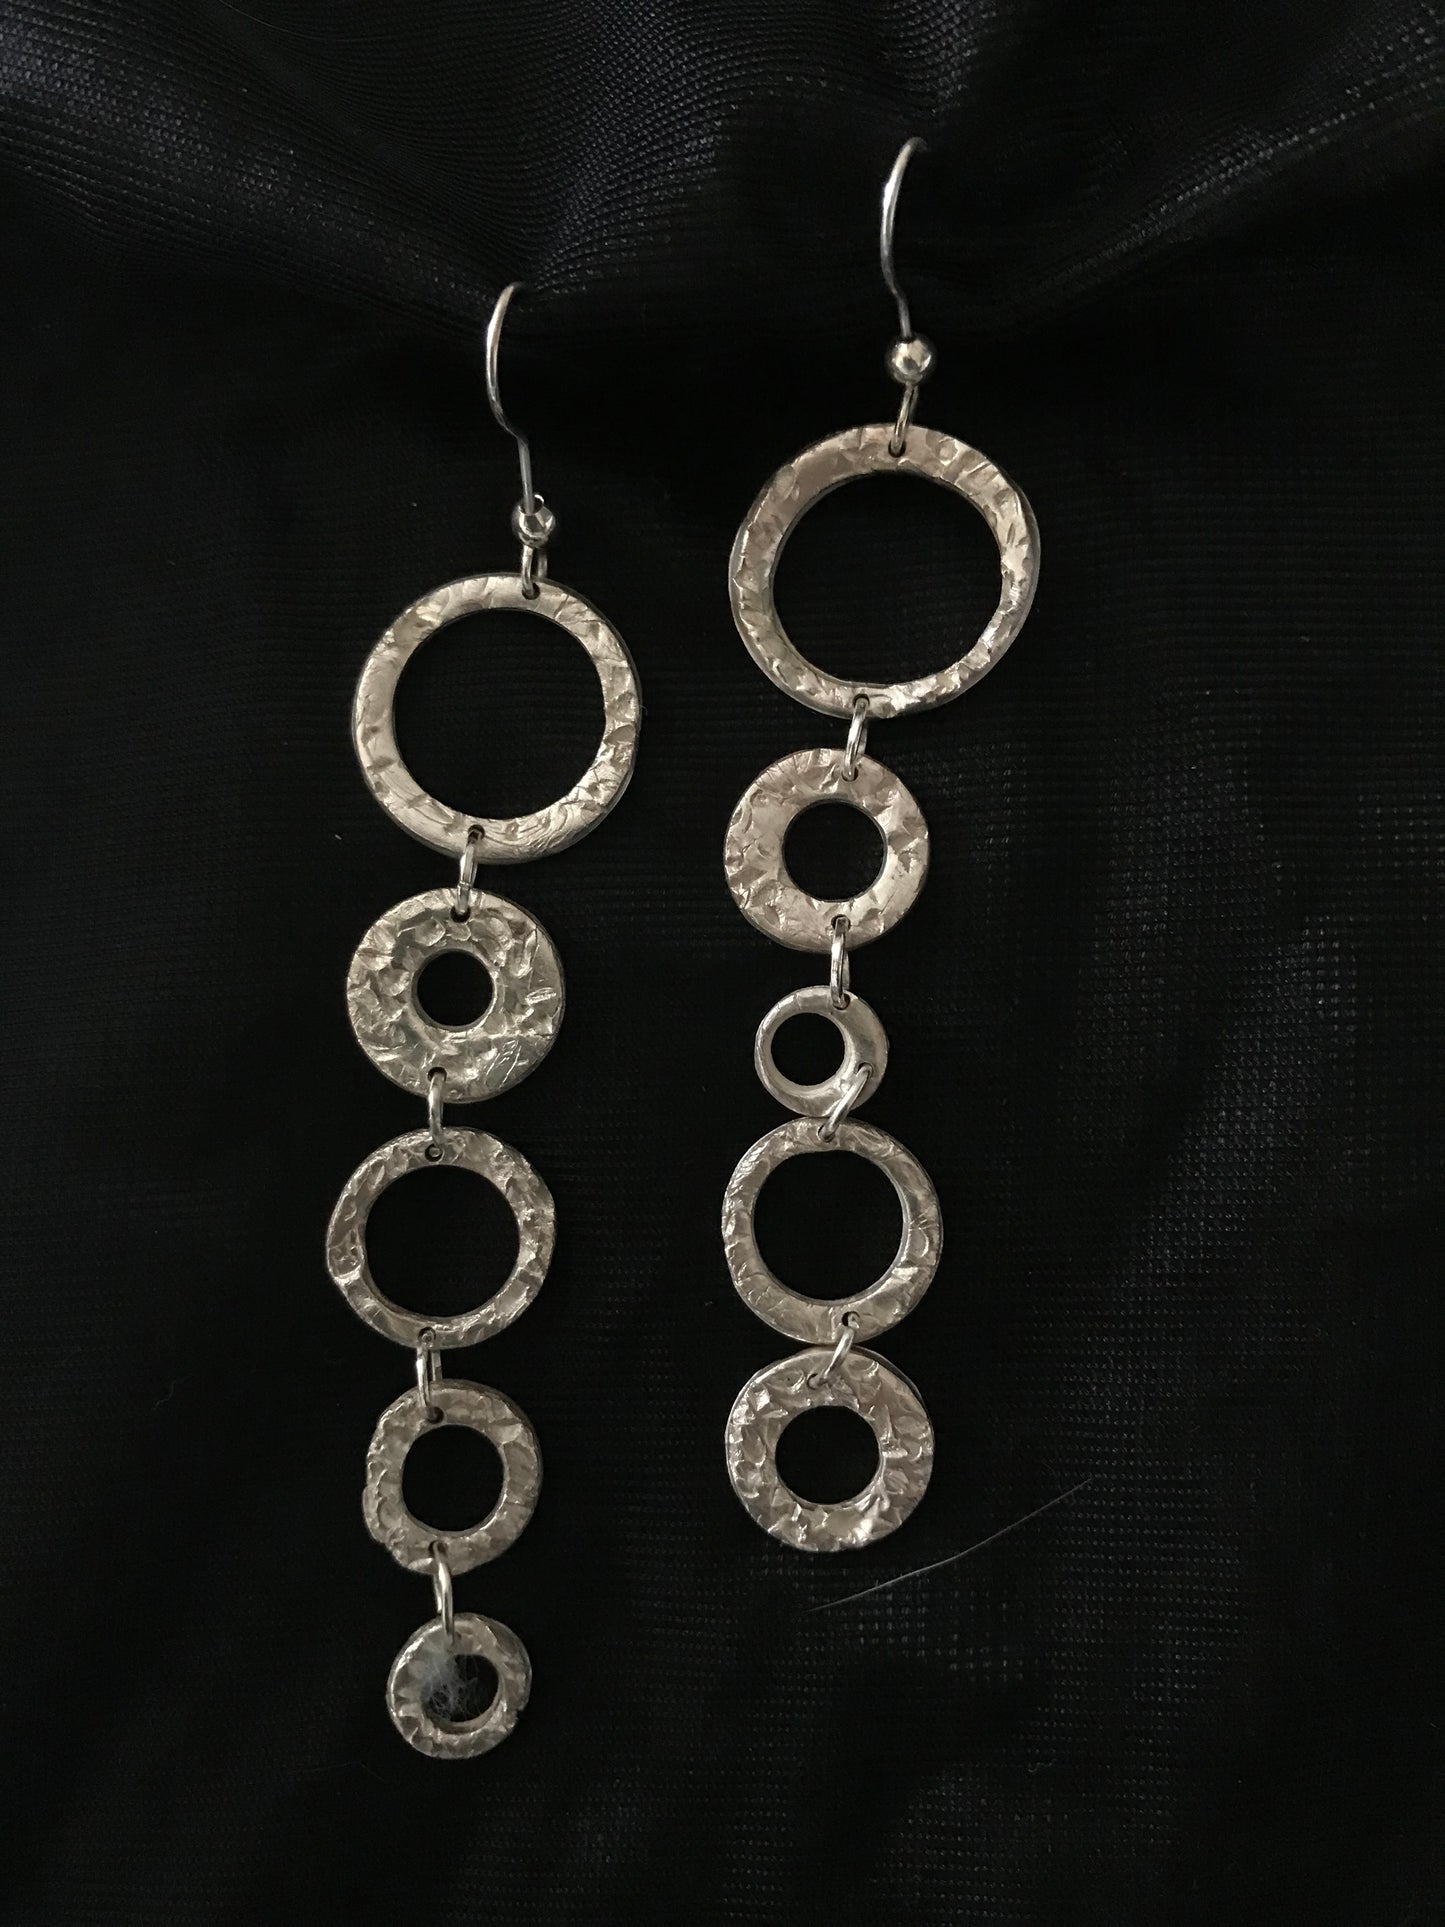 Silver 5 rings earrings